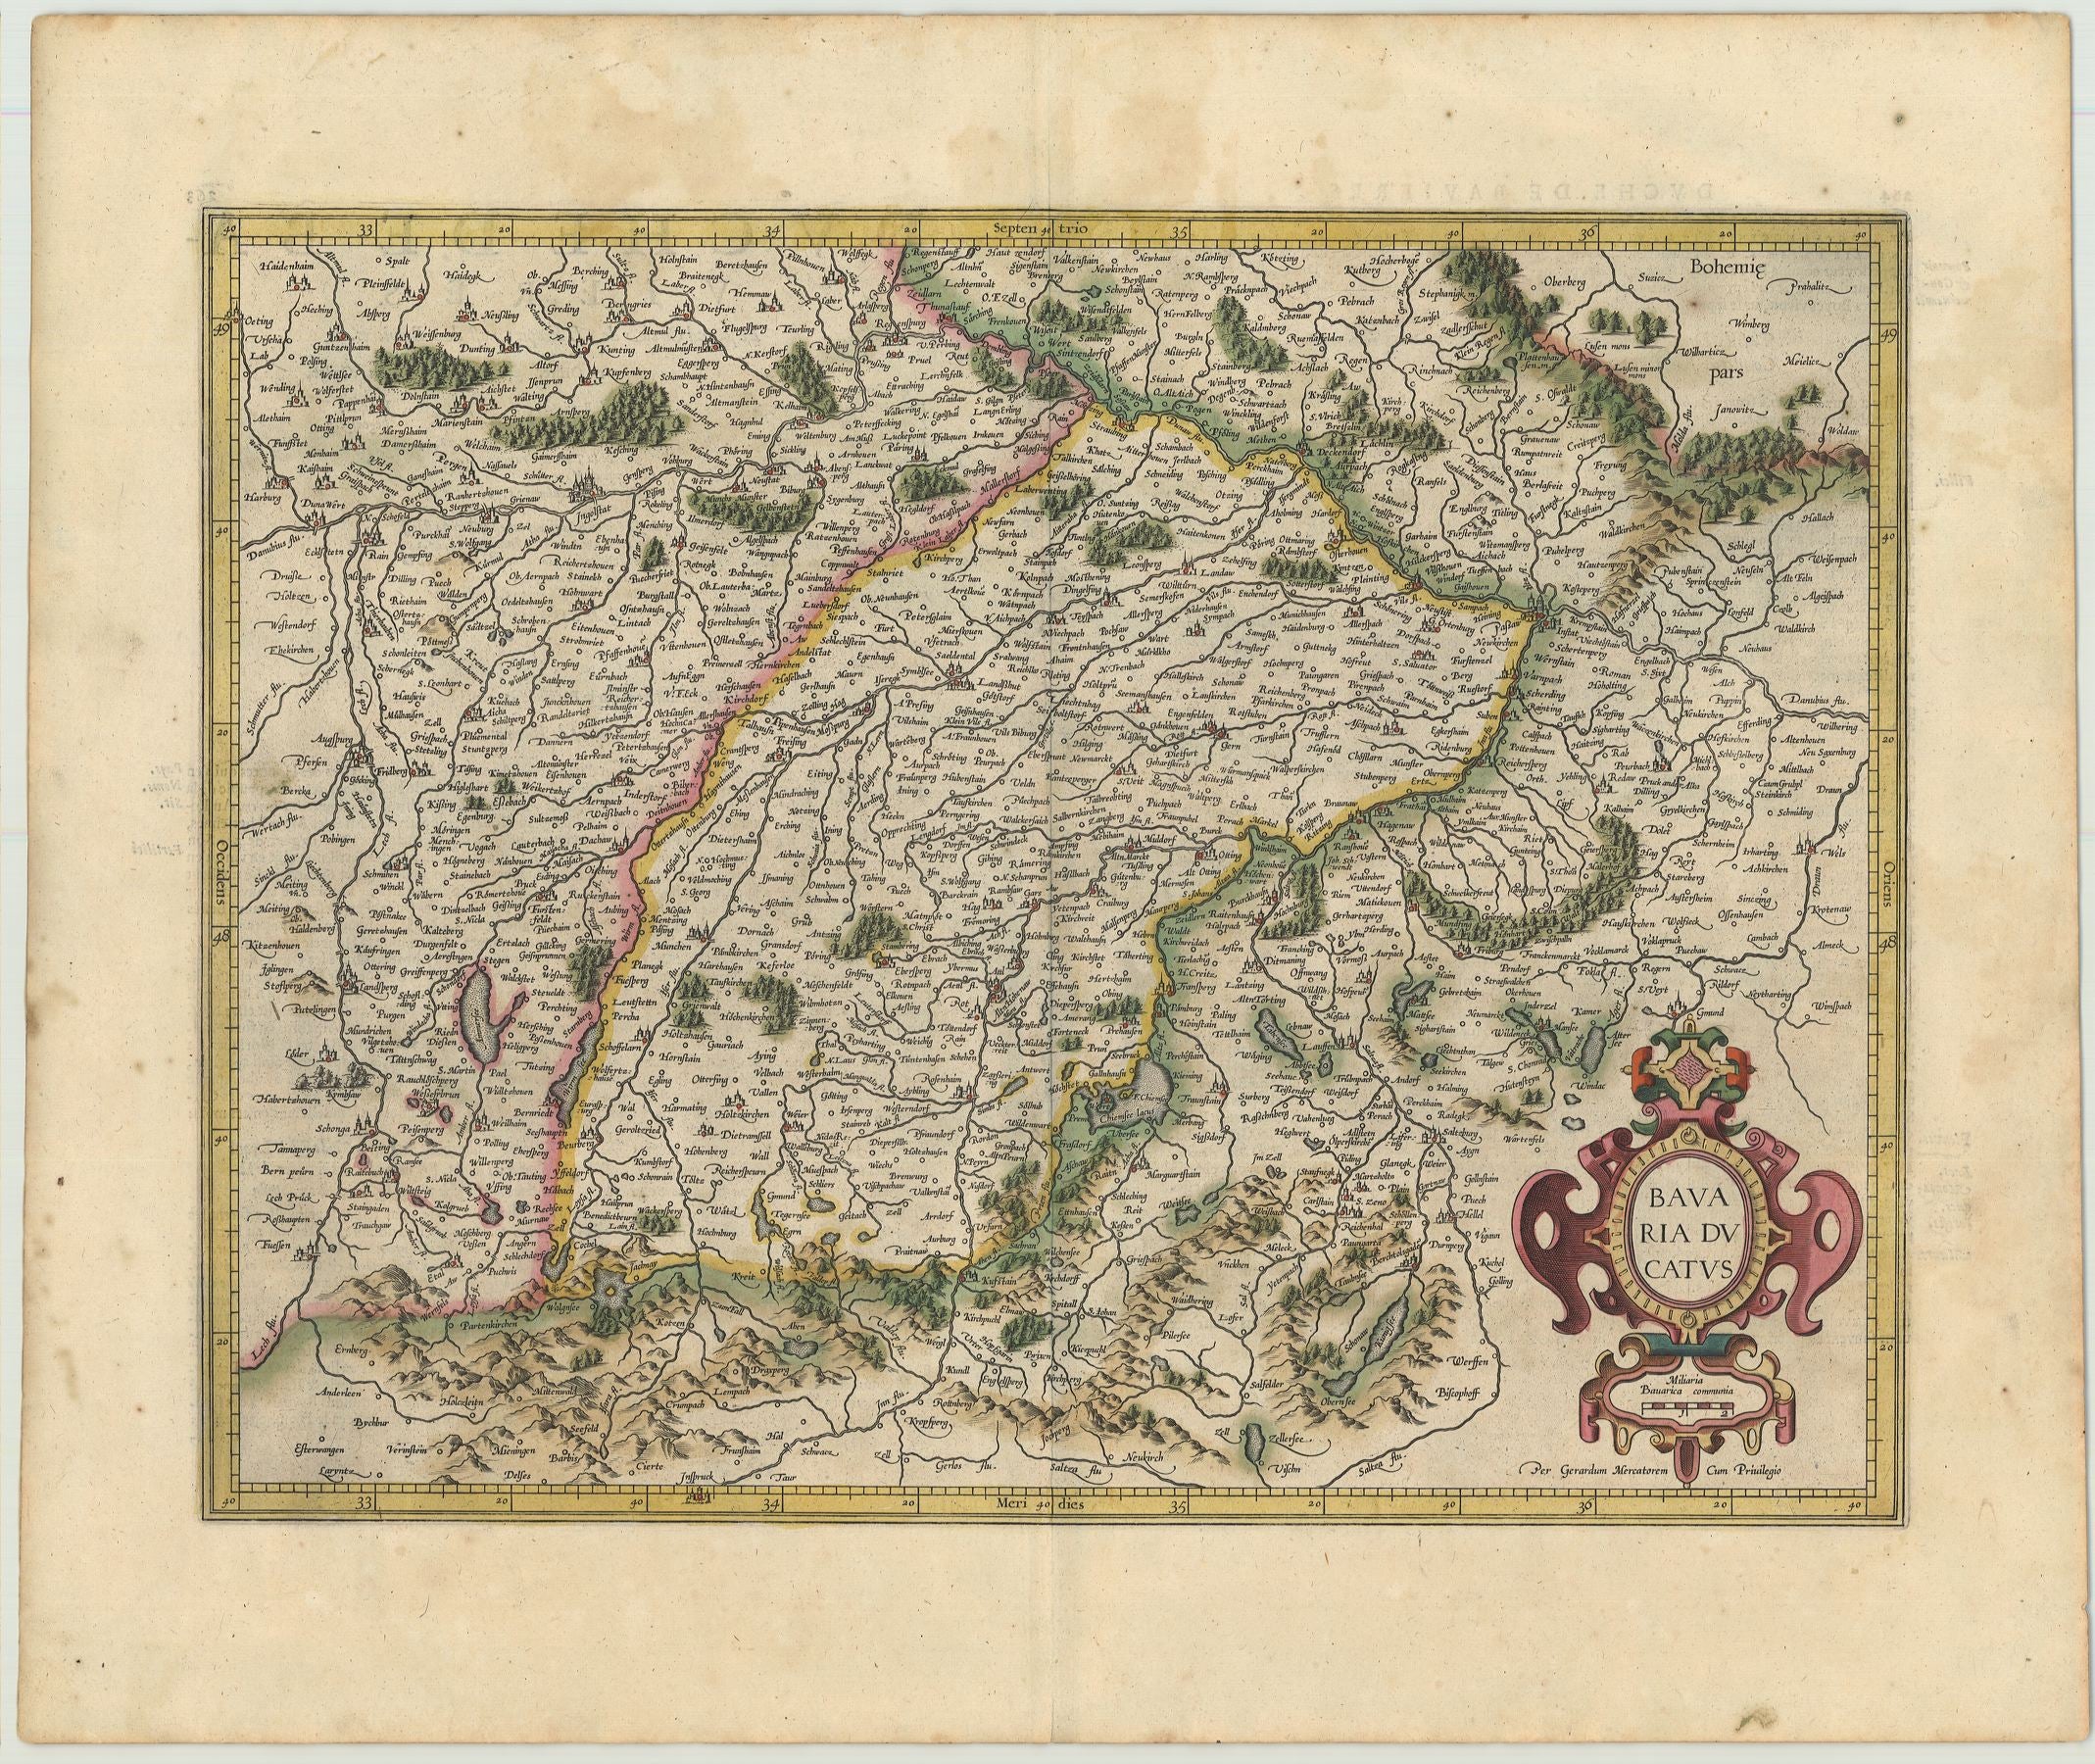 Bayern im Jahr 1619 von Gerard Mercator